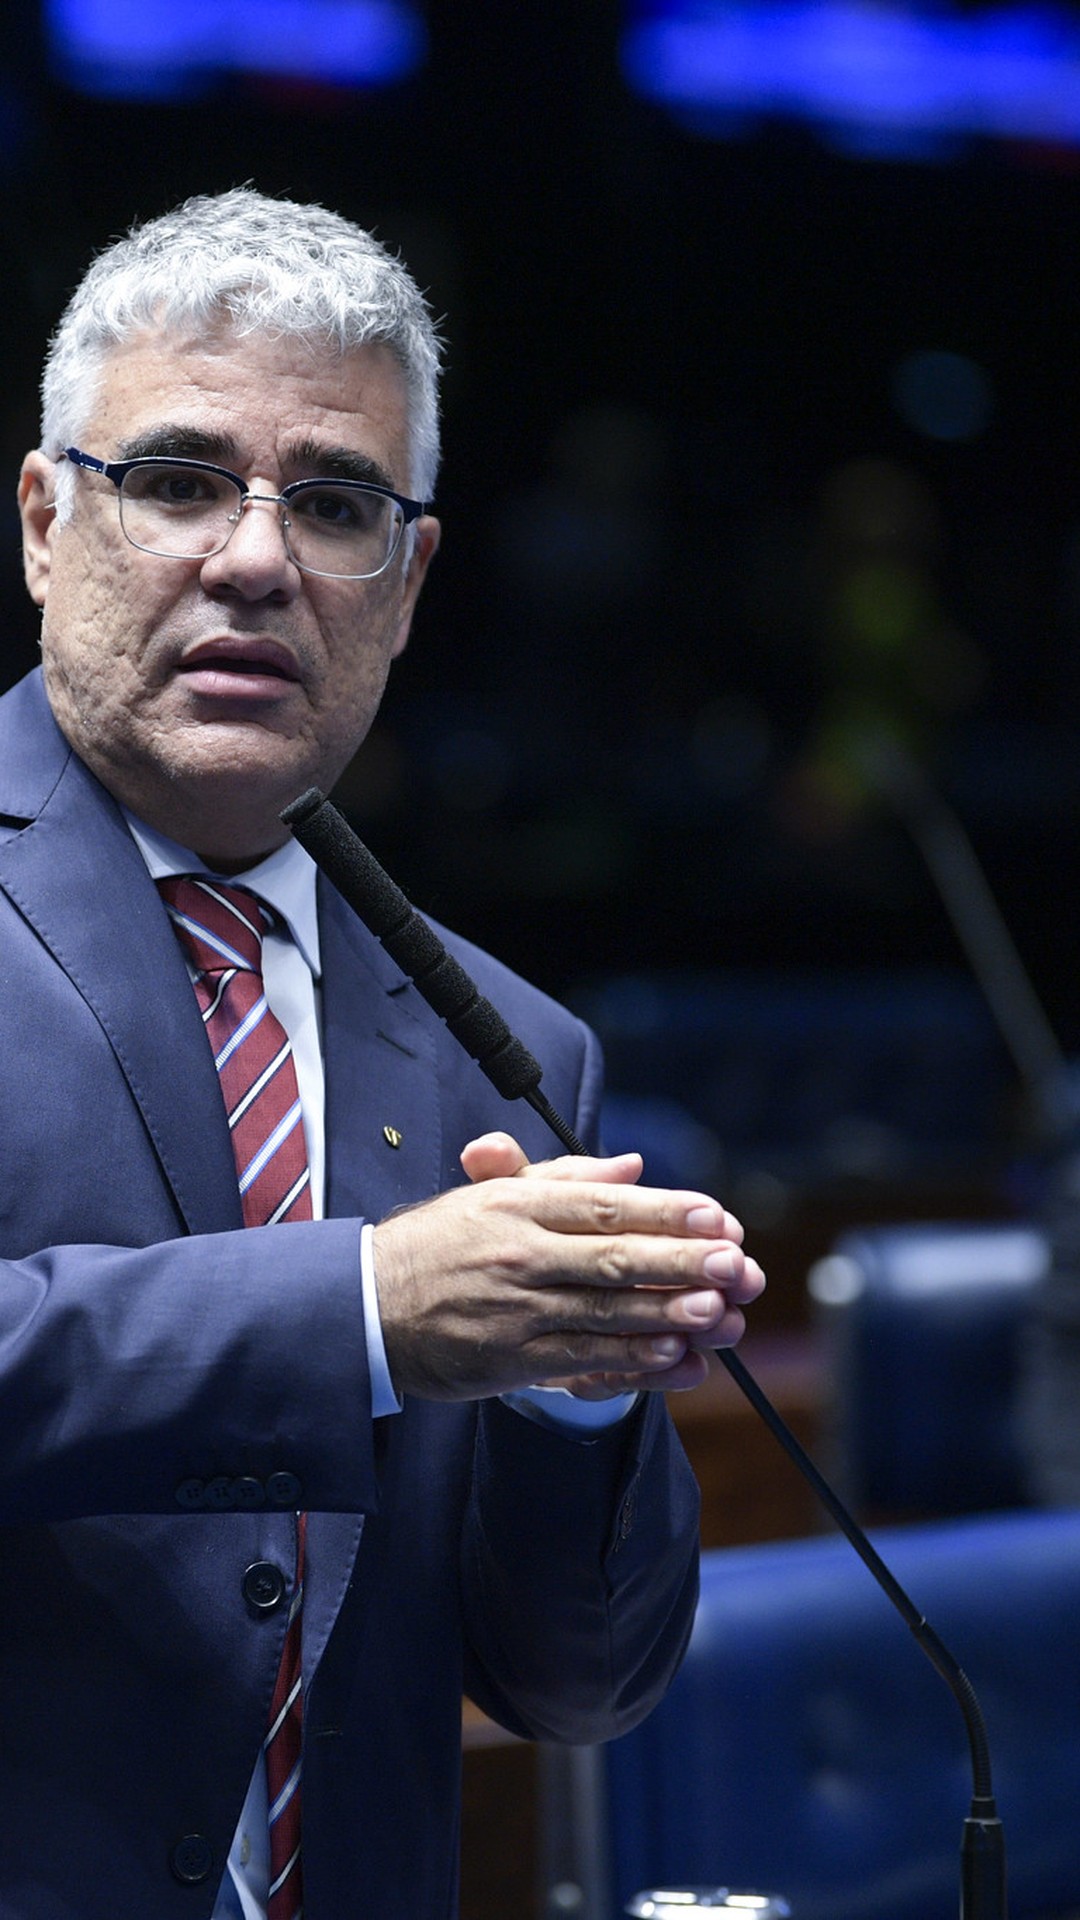 Pró-vida, senador Eduardo Girão (CE) doa R$ 1,5 mi a campanhas no país -  13/11/2020 - UOL Eleições